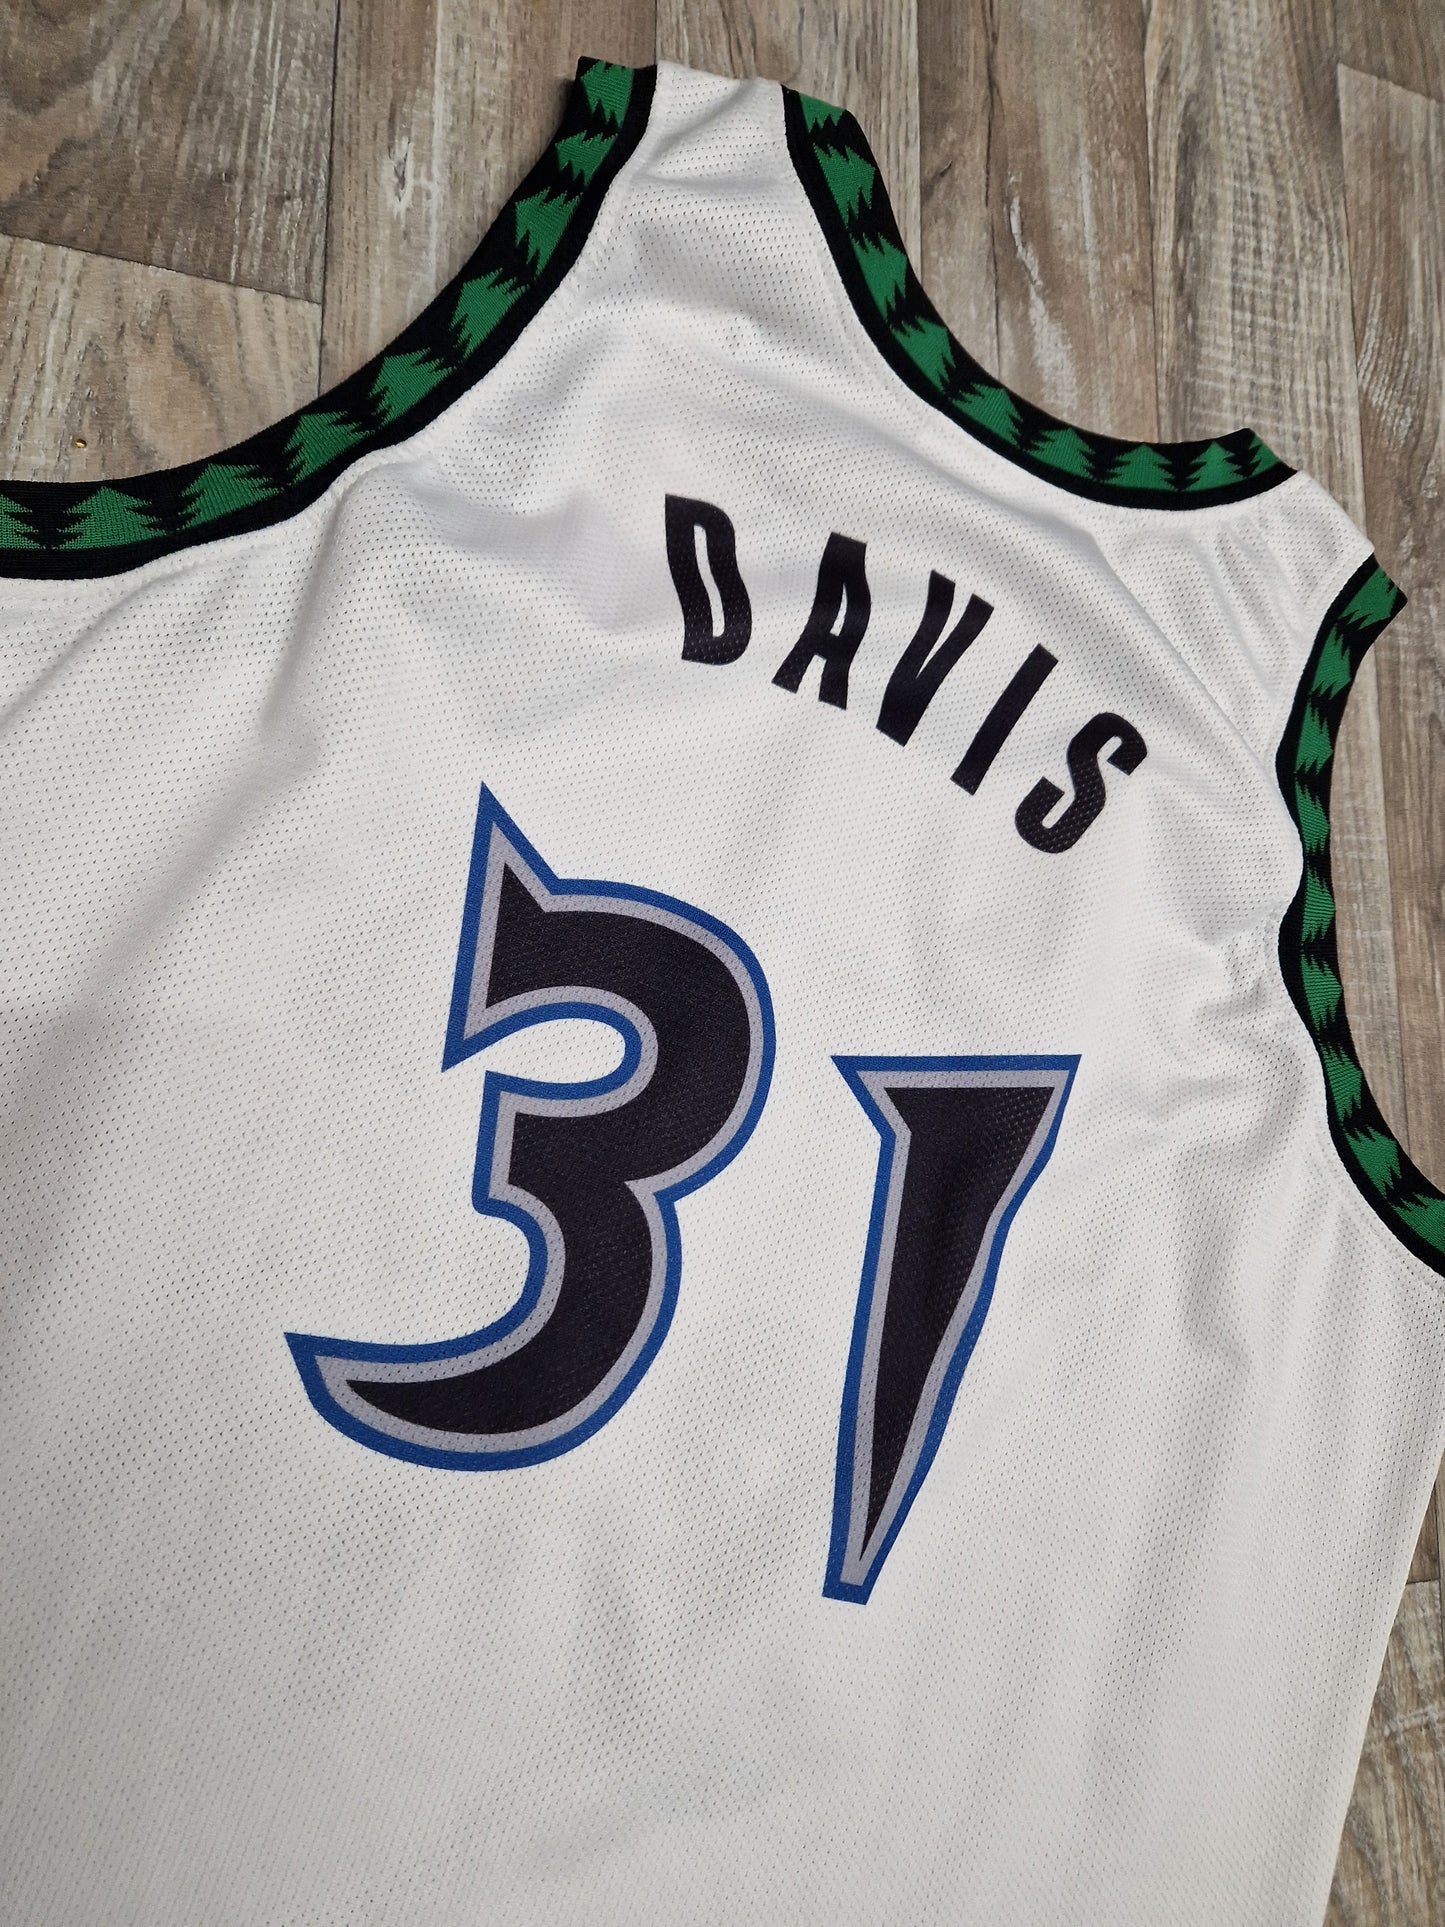 Ricky Davis Minnesota Timberwolves Jersey Size XL